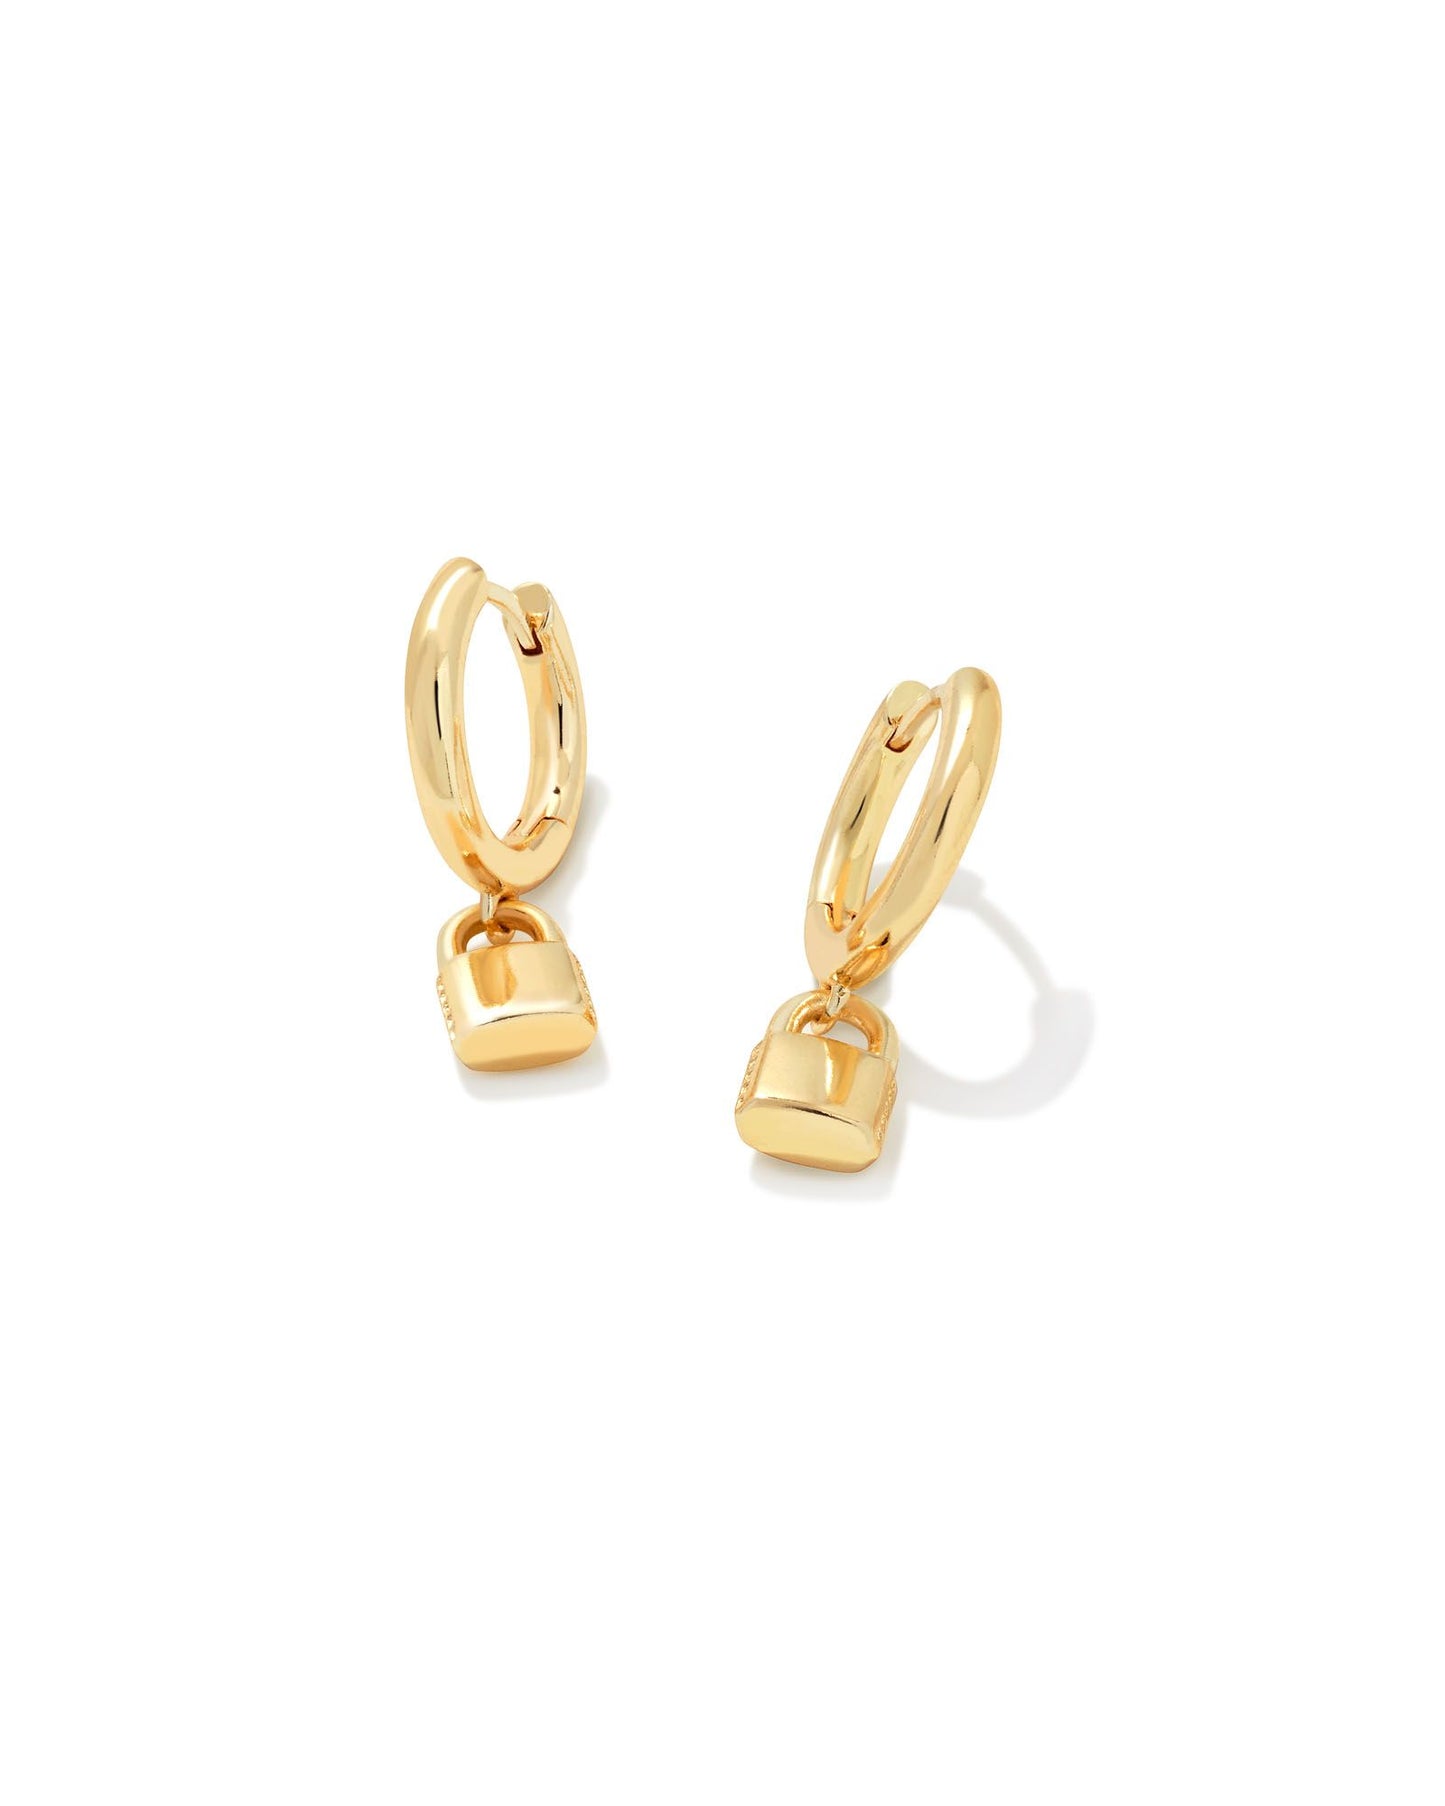 Kendra Scott Jess Lock Huggie Earrings Gold Metal-Earrings-Kendra Scott-E1992GLD-The Twisted Chandelier